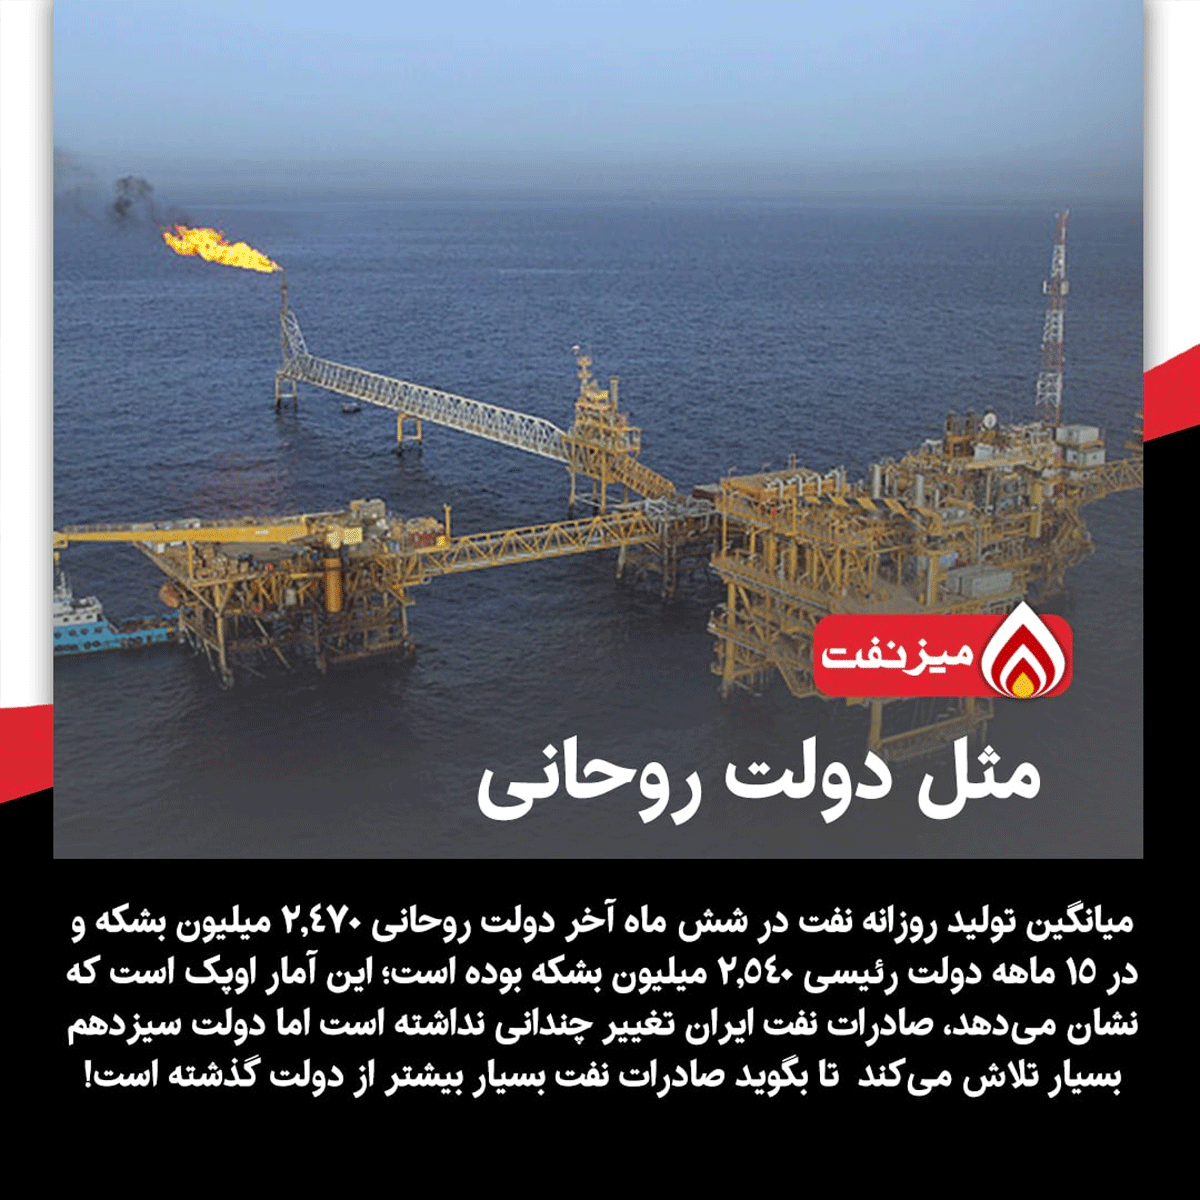 آمار اوپک از فروش نفت ایران